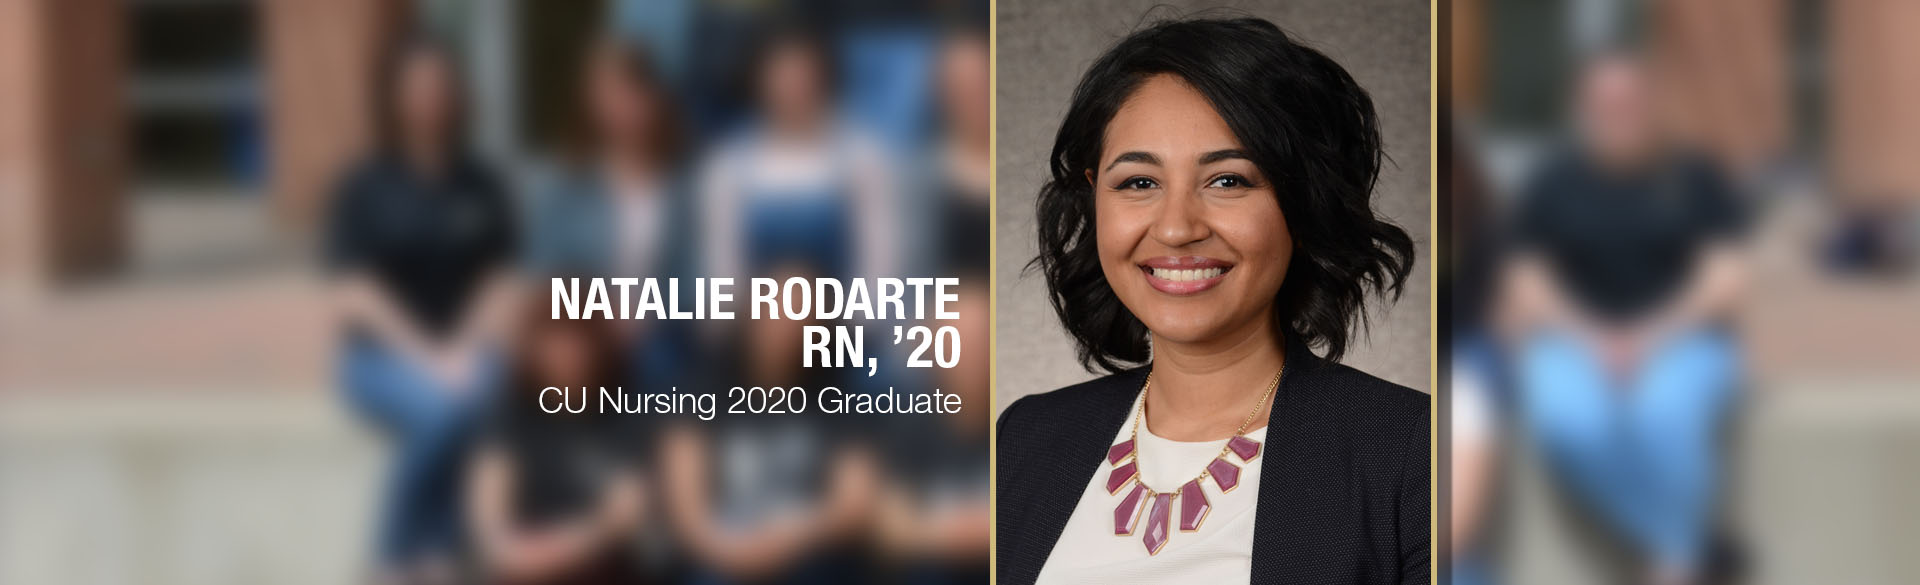 Natalie Rodarte, CU Nursing 2020 Graduate